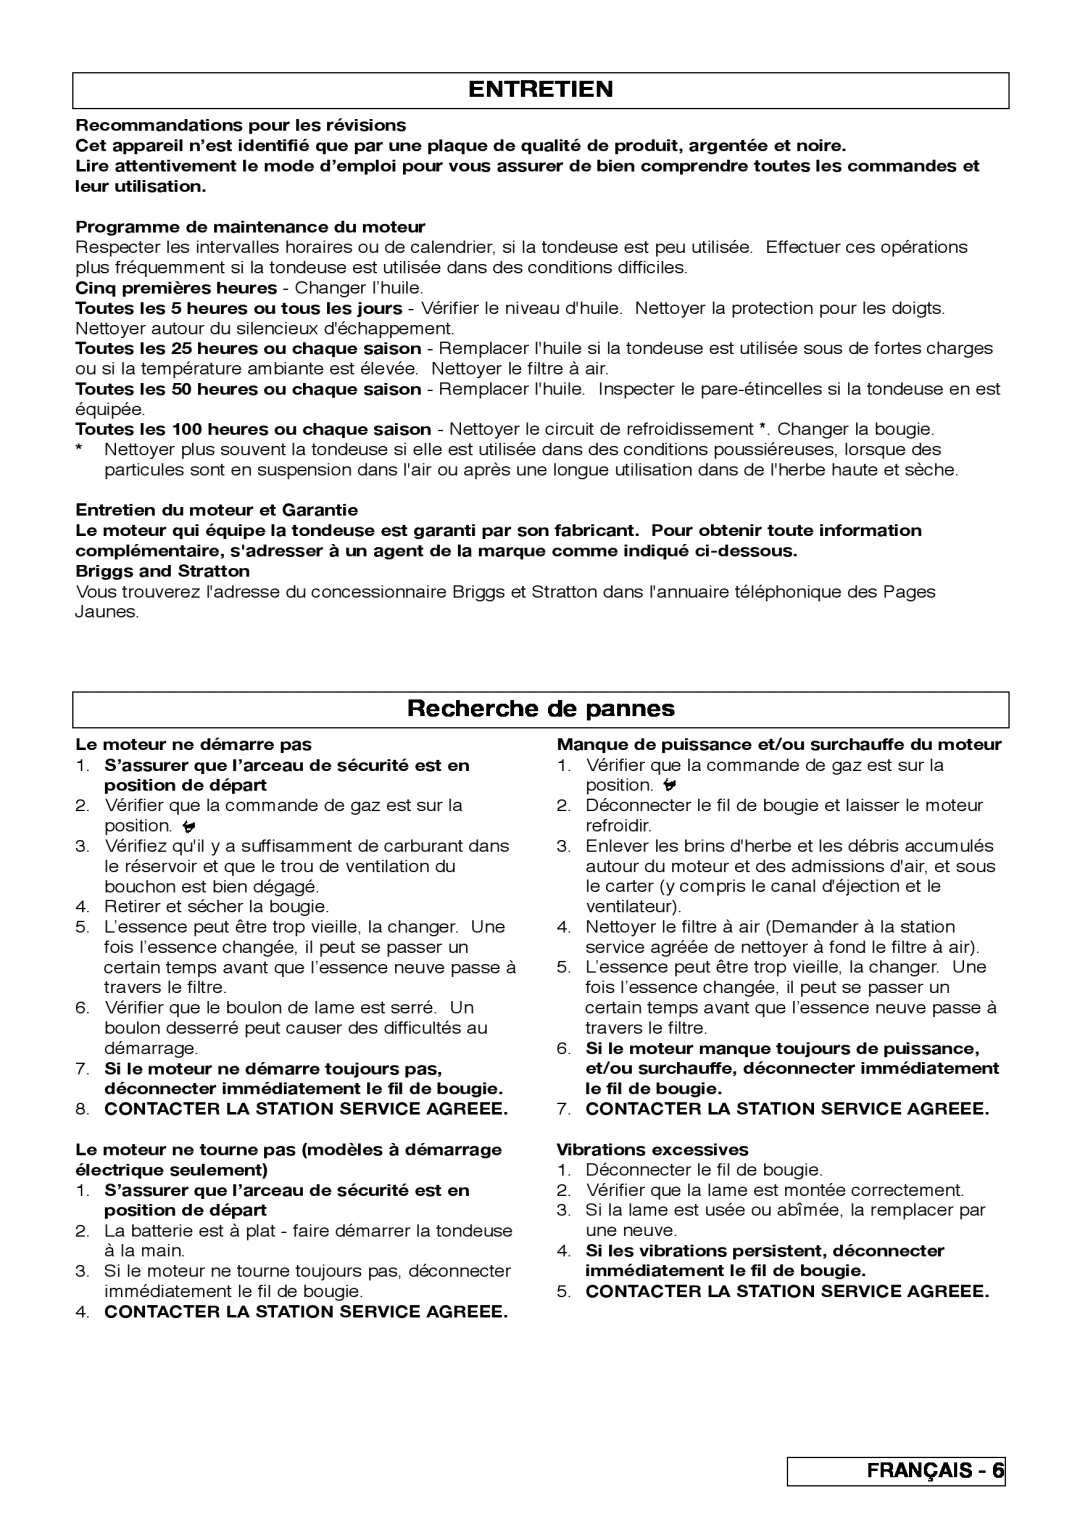 Husqvarna R 43SE manual Entretien, Recherche de pannes, Français 